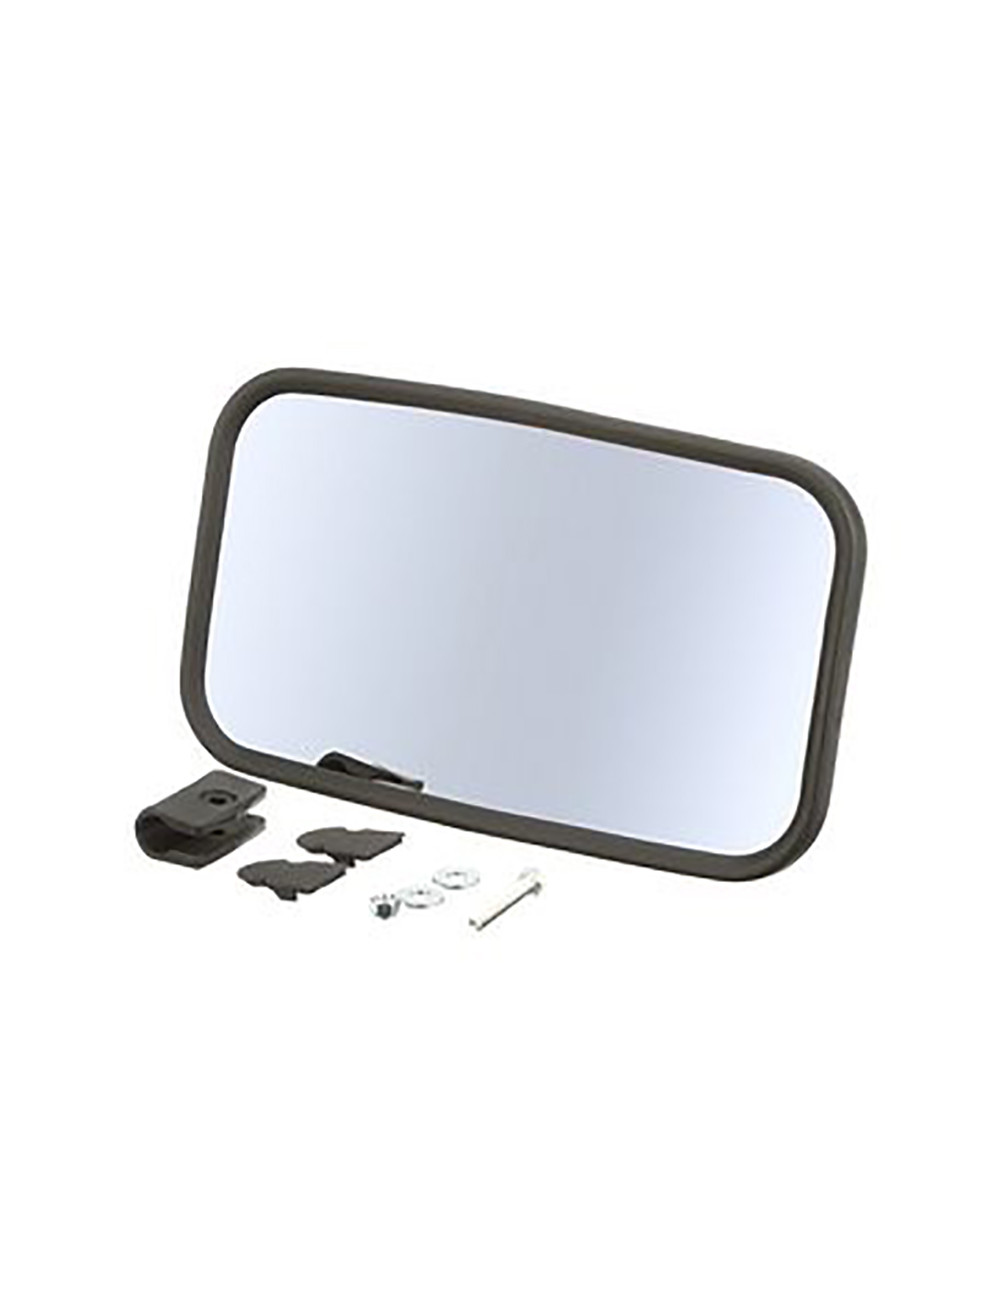 Specchio retrovisore New Holland - cod 5165333